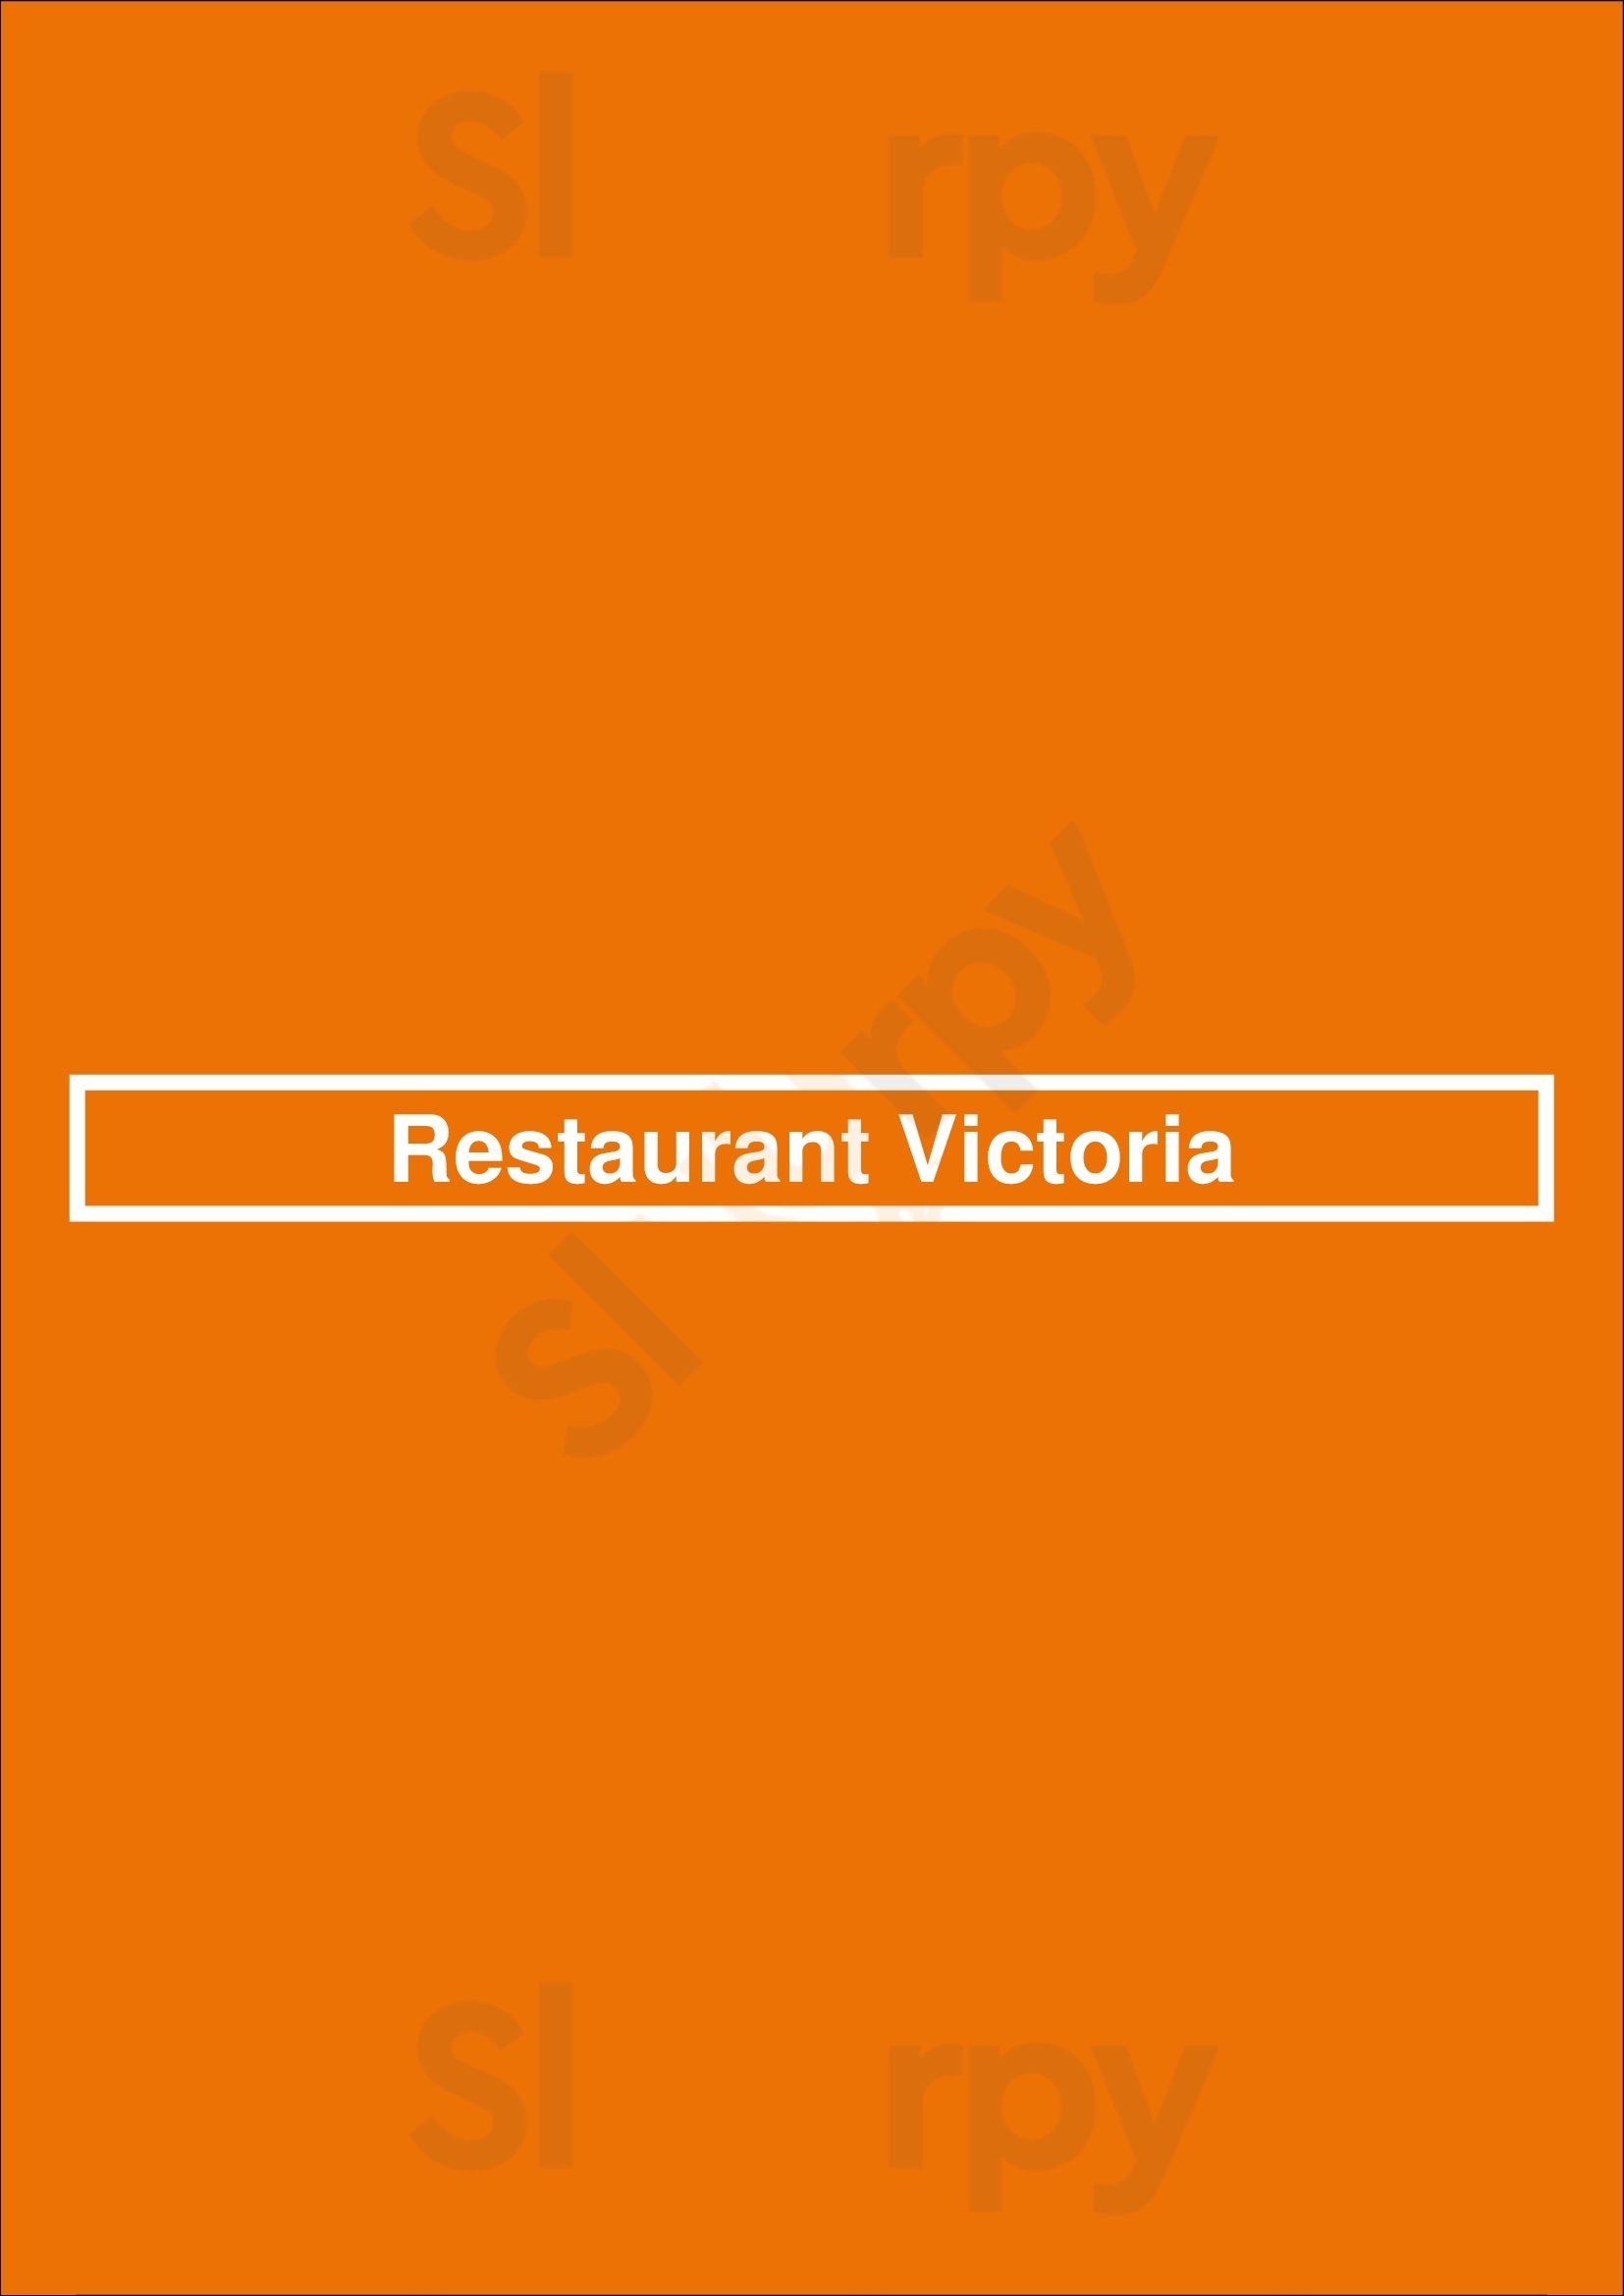 Restaurant Victoria Eindhoven Menu - 1